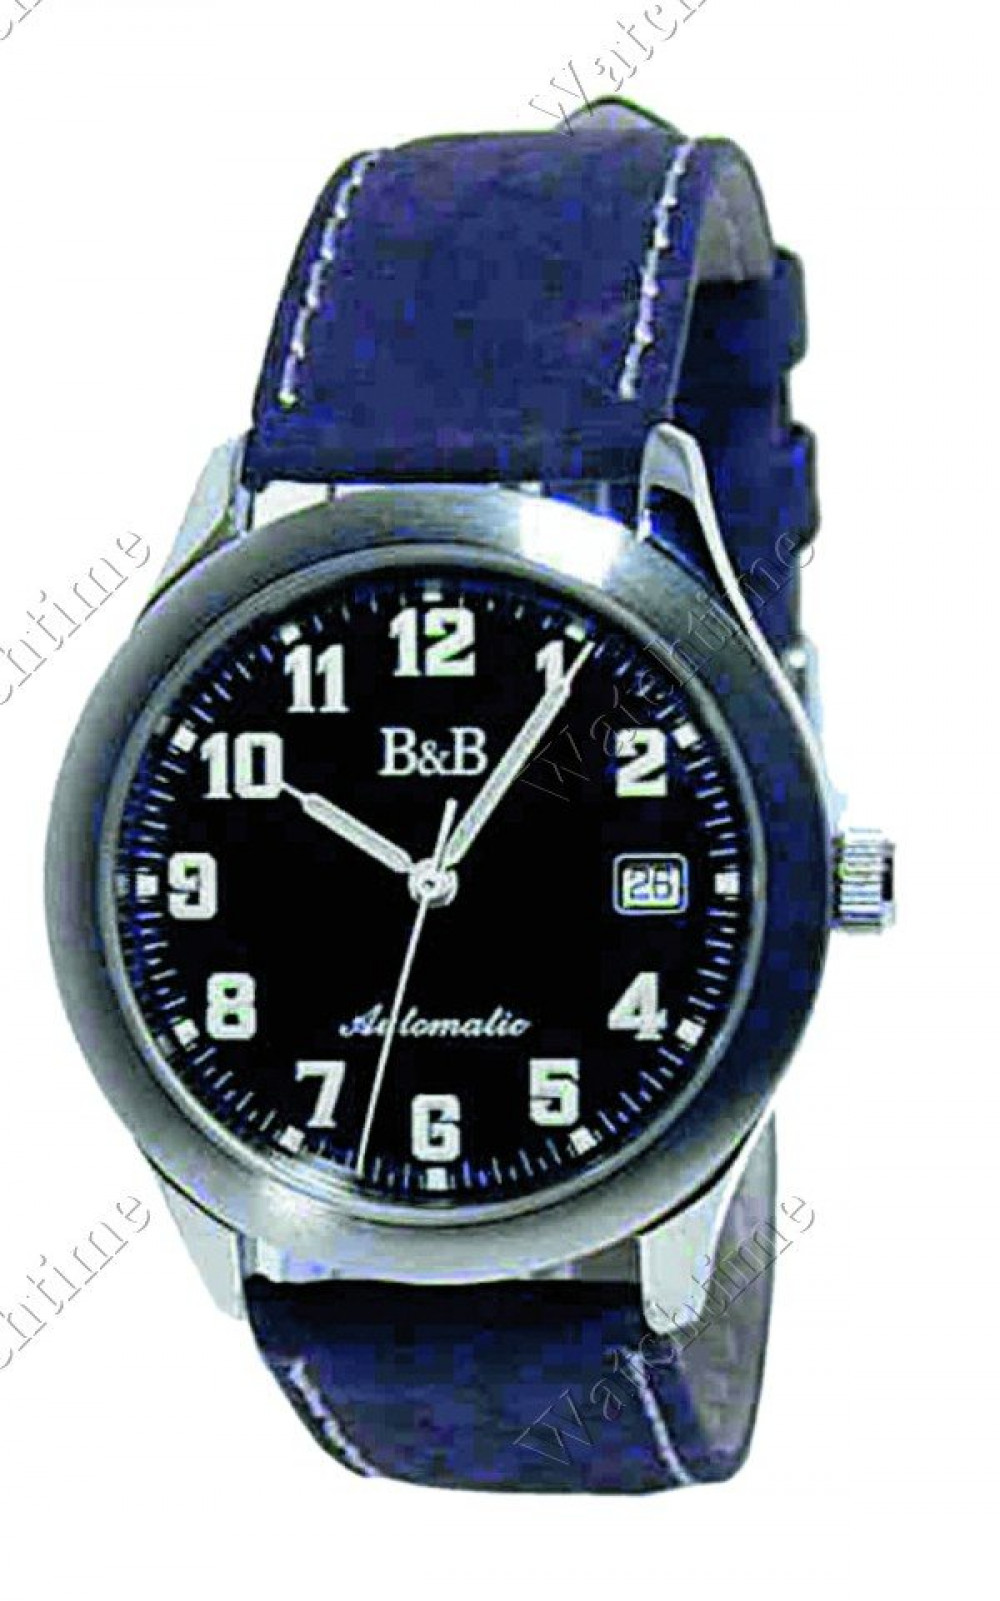 Zegarek firmy B & B, model Classic